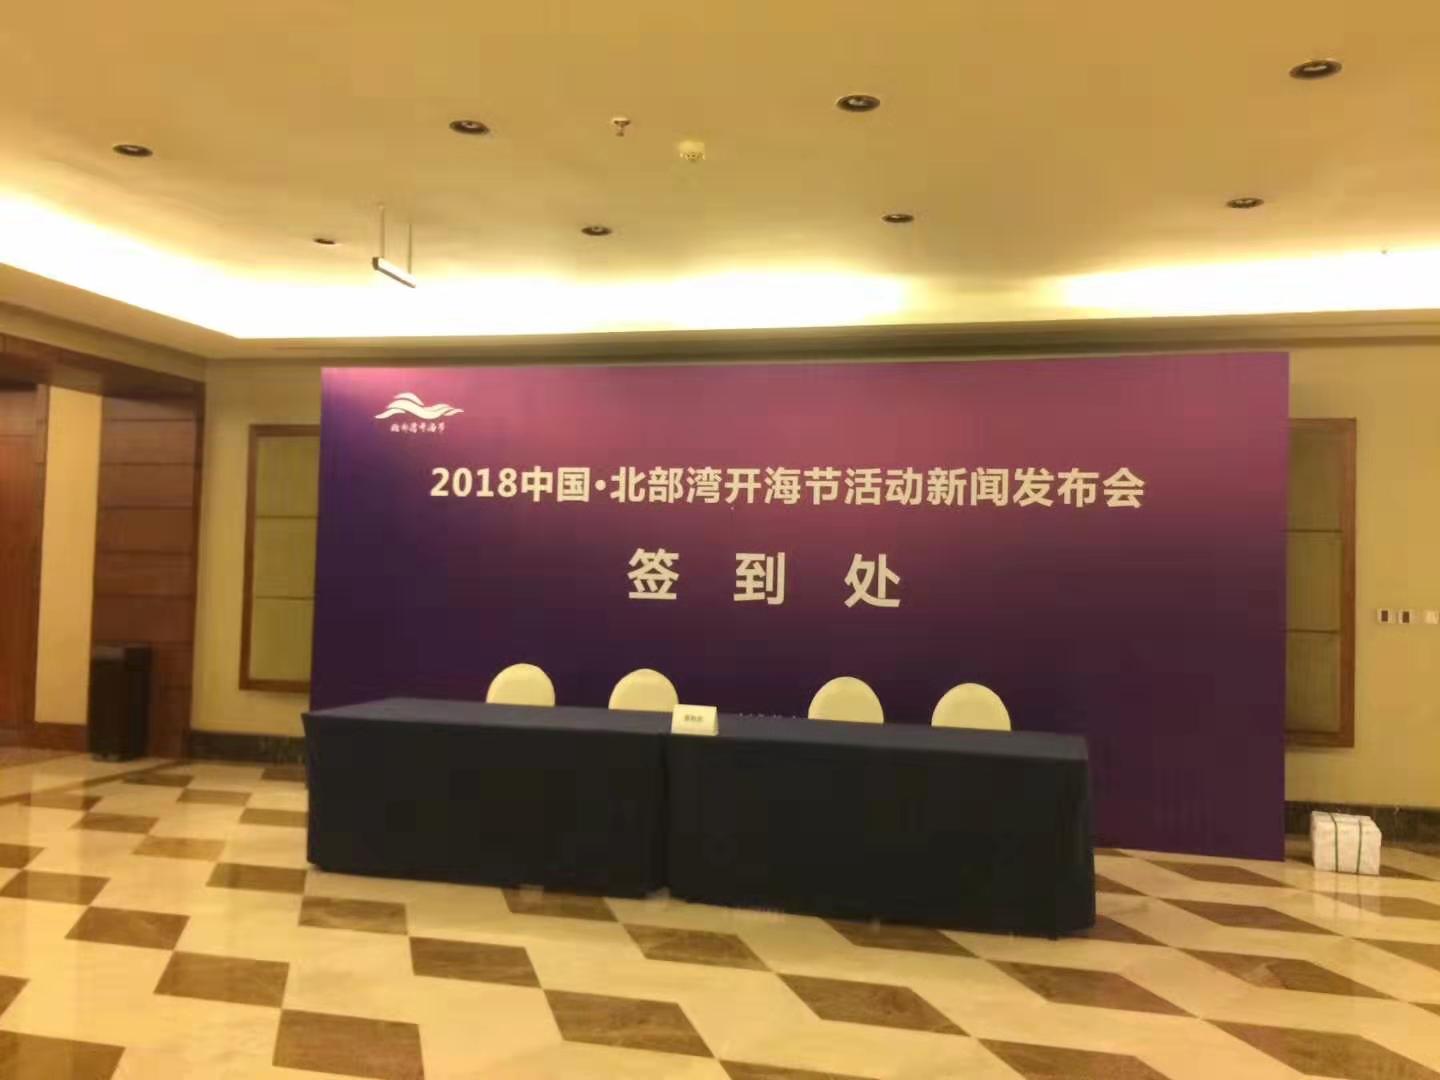 2018中国北部湾开海节活动新闻发布会